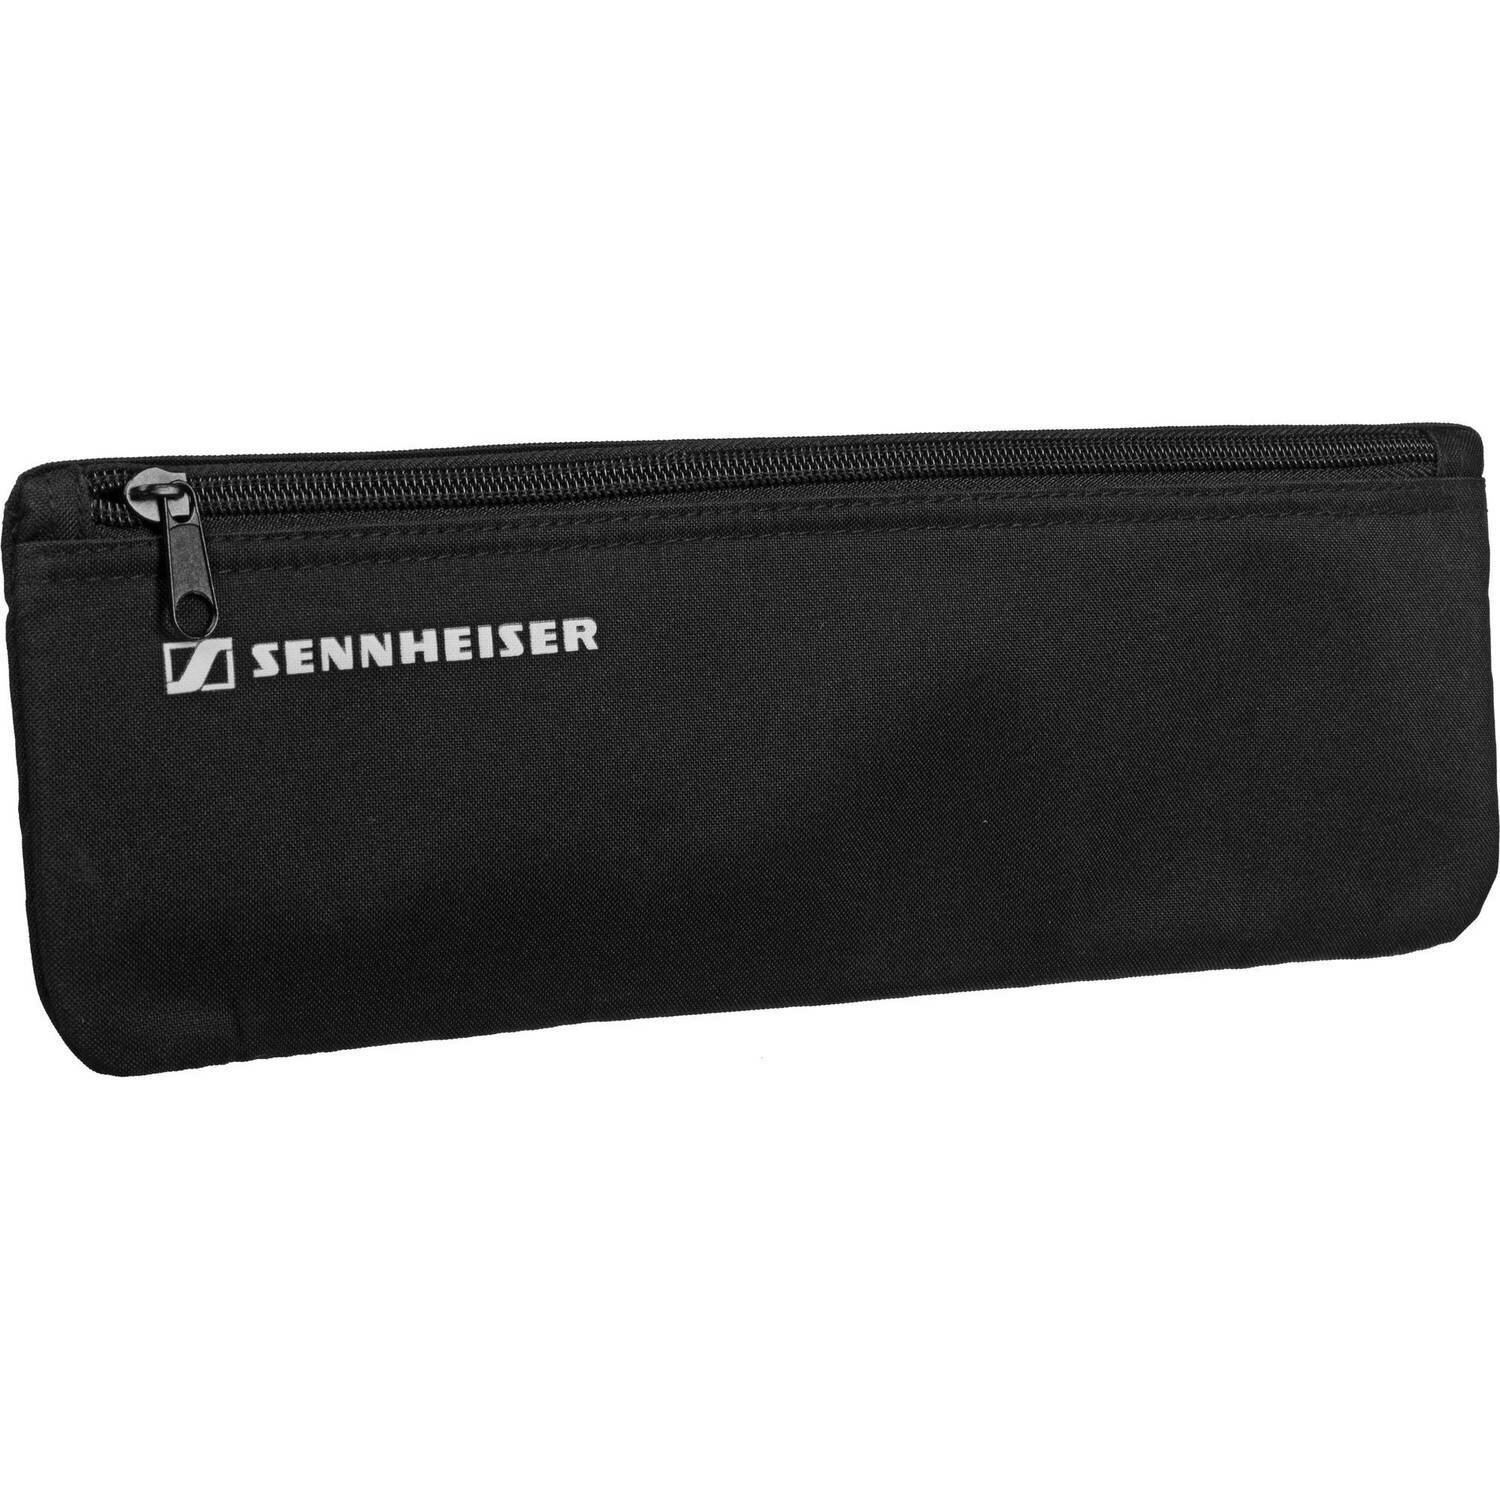 Sennheiser Zippered Pouch - for Sennheiser Bodypack Transmitter
#SEPOUCHEWSK MFR #577712